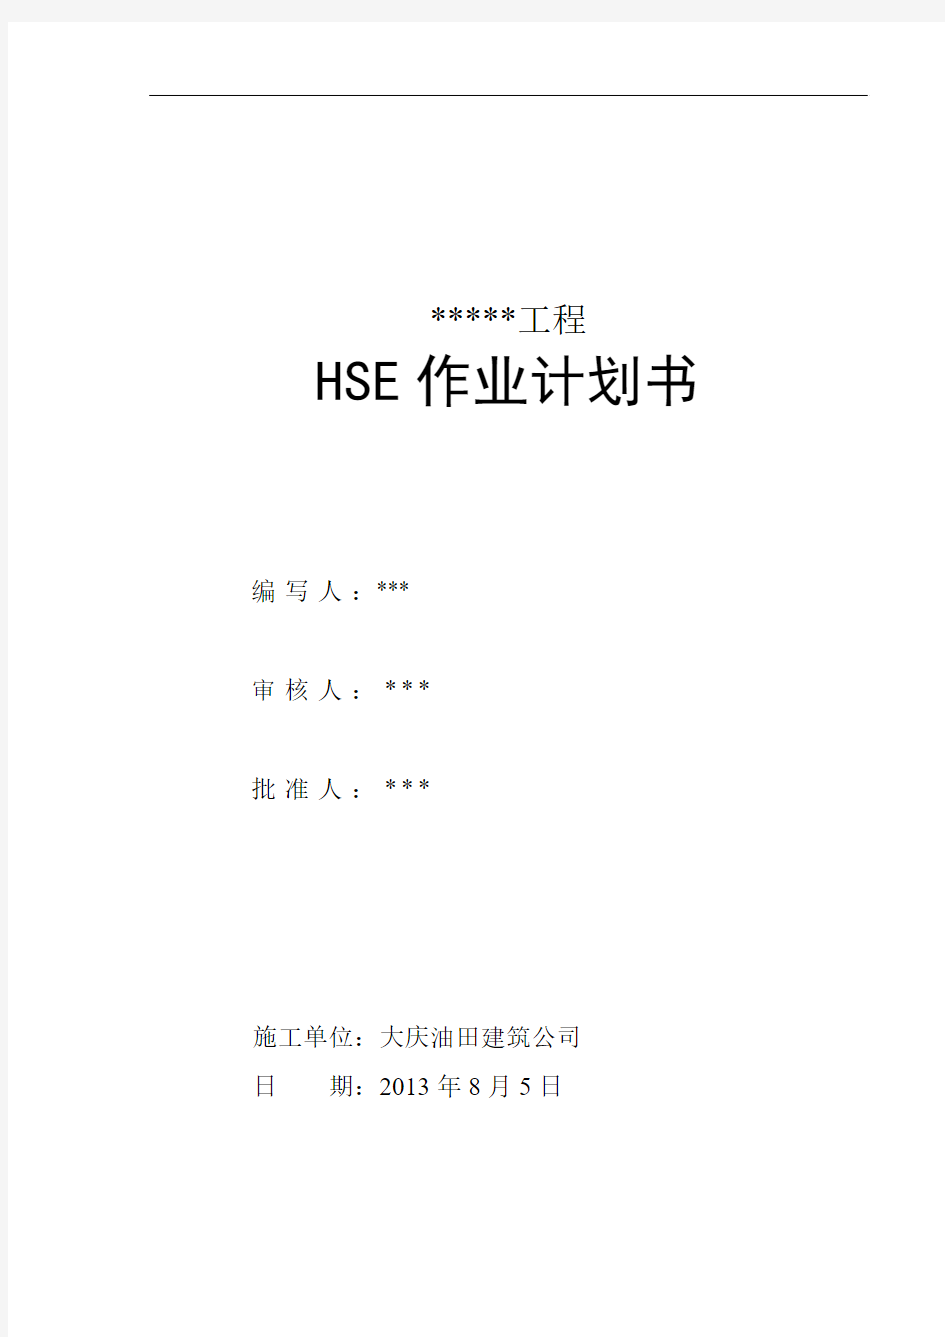 两书一表 HSE作业计划书